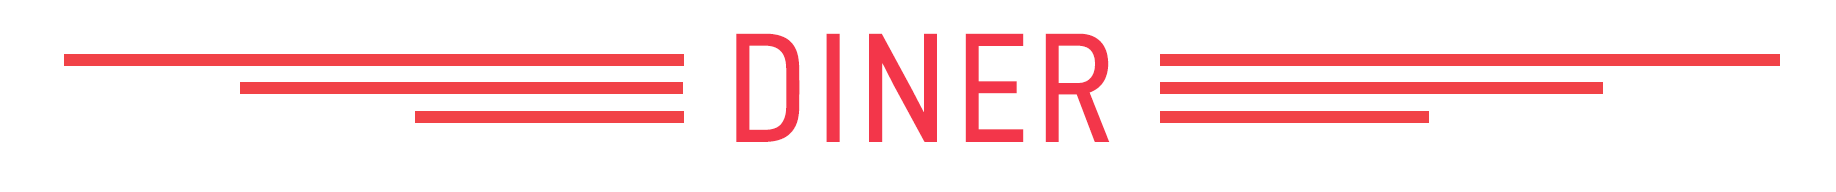 diner_logo-2